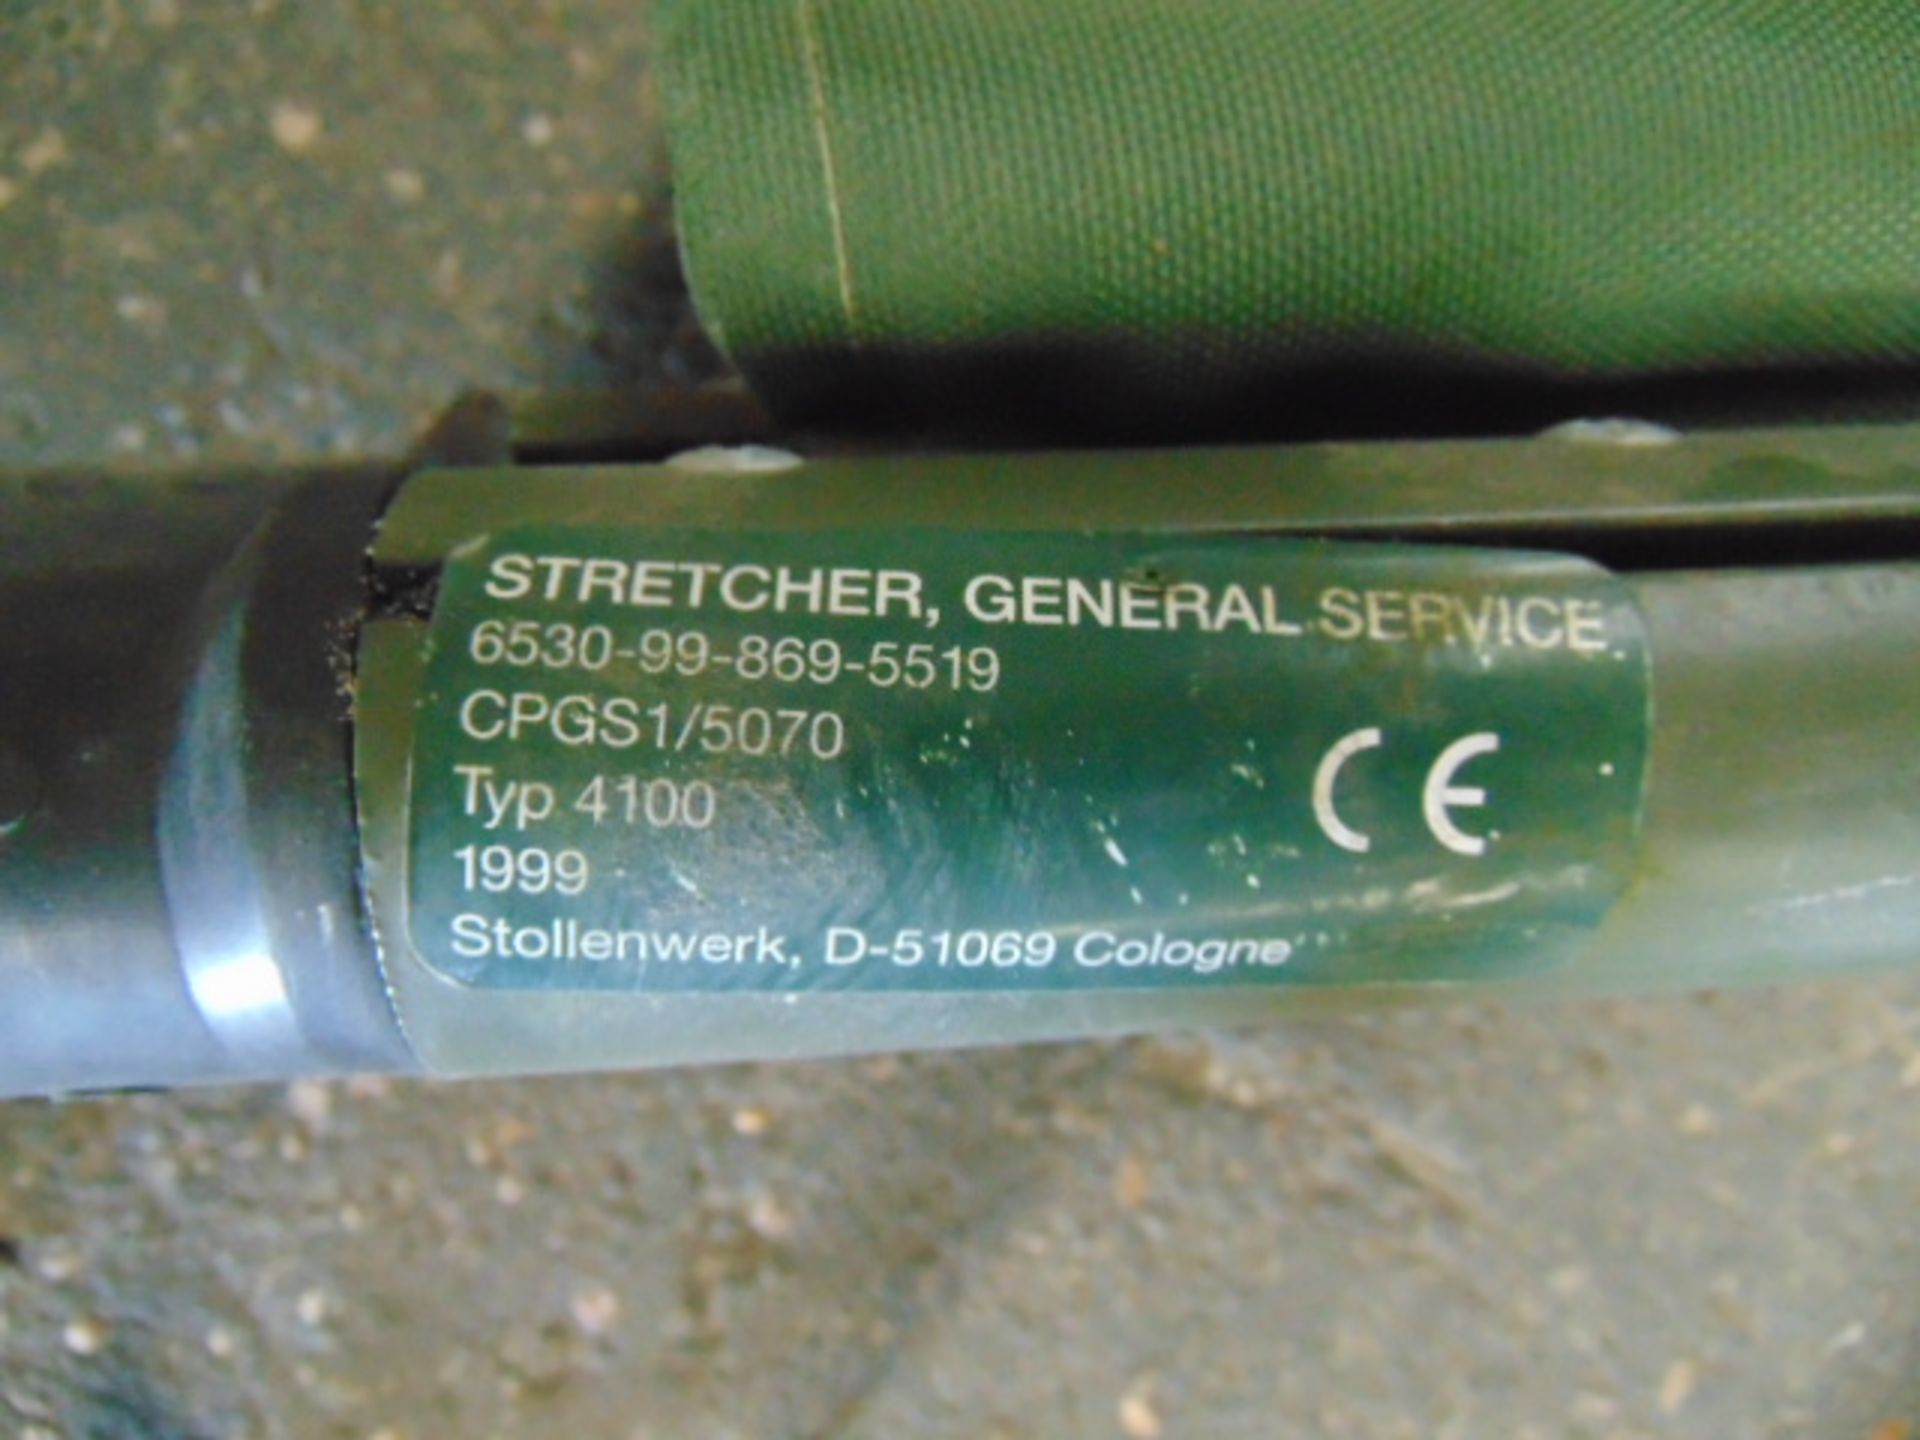 General Service Stretcher - Bild 3 aus 6